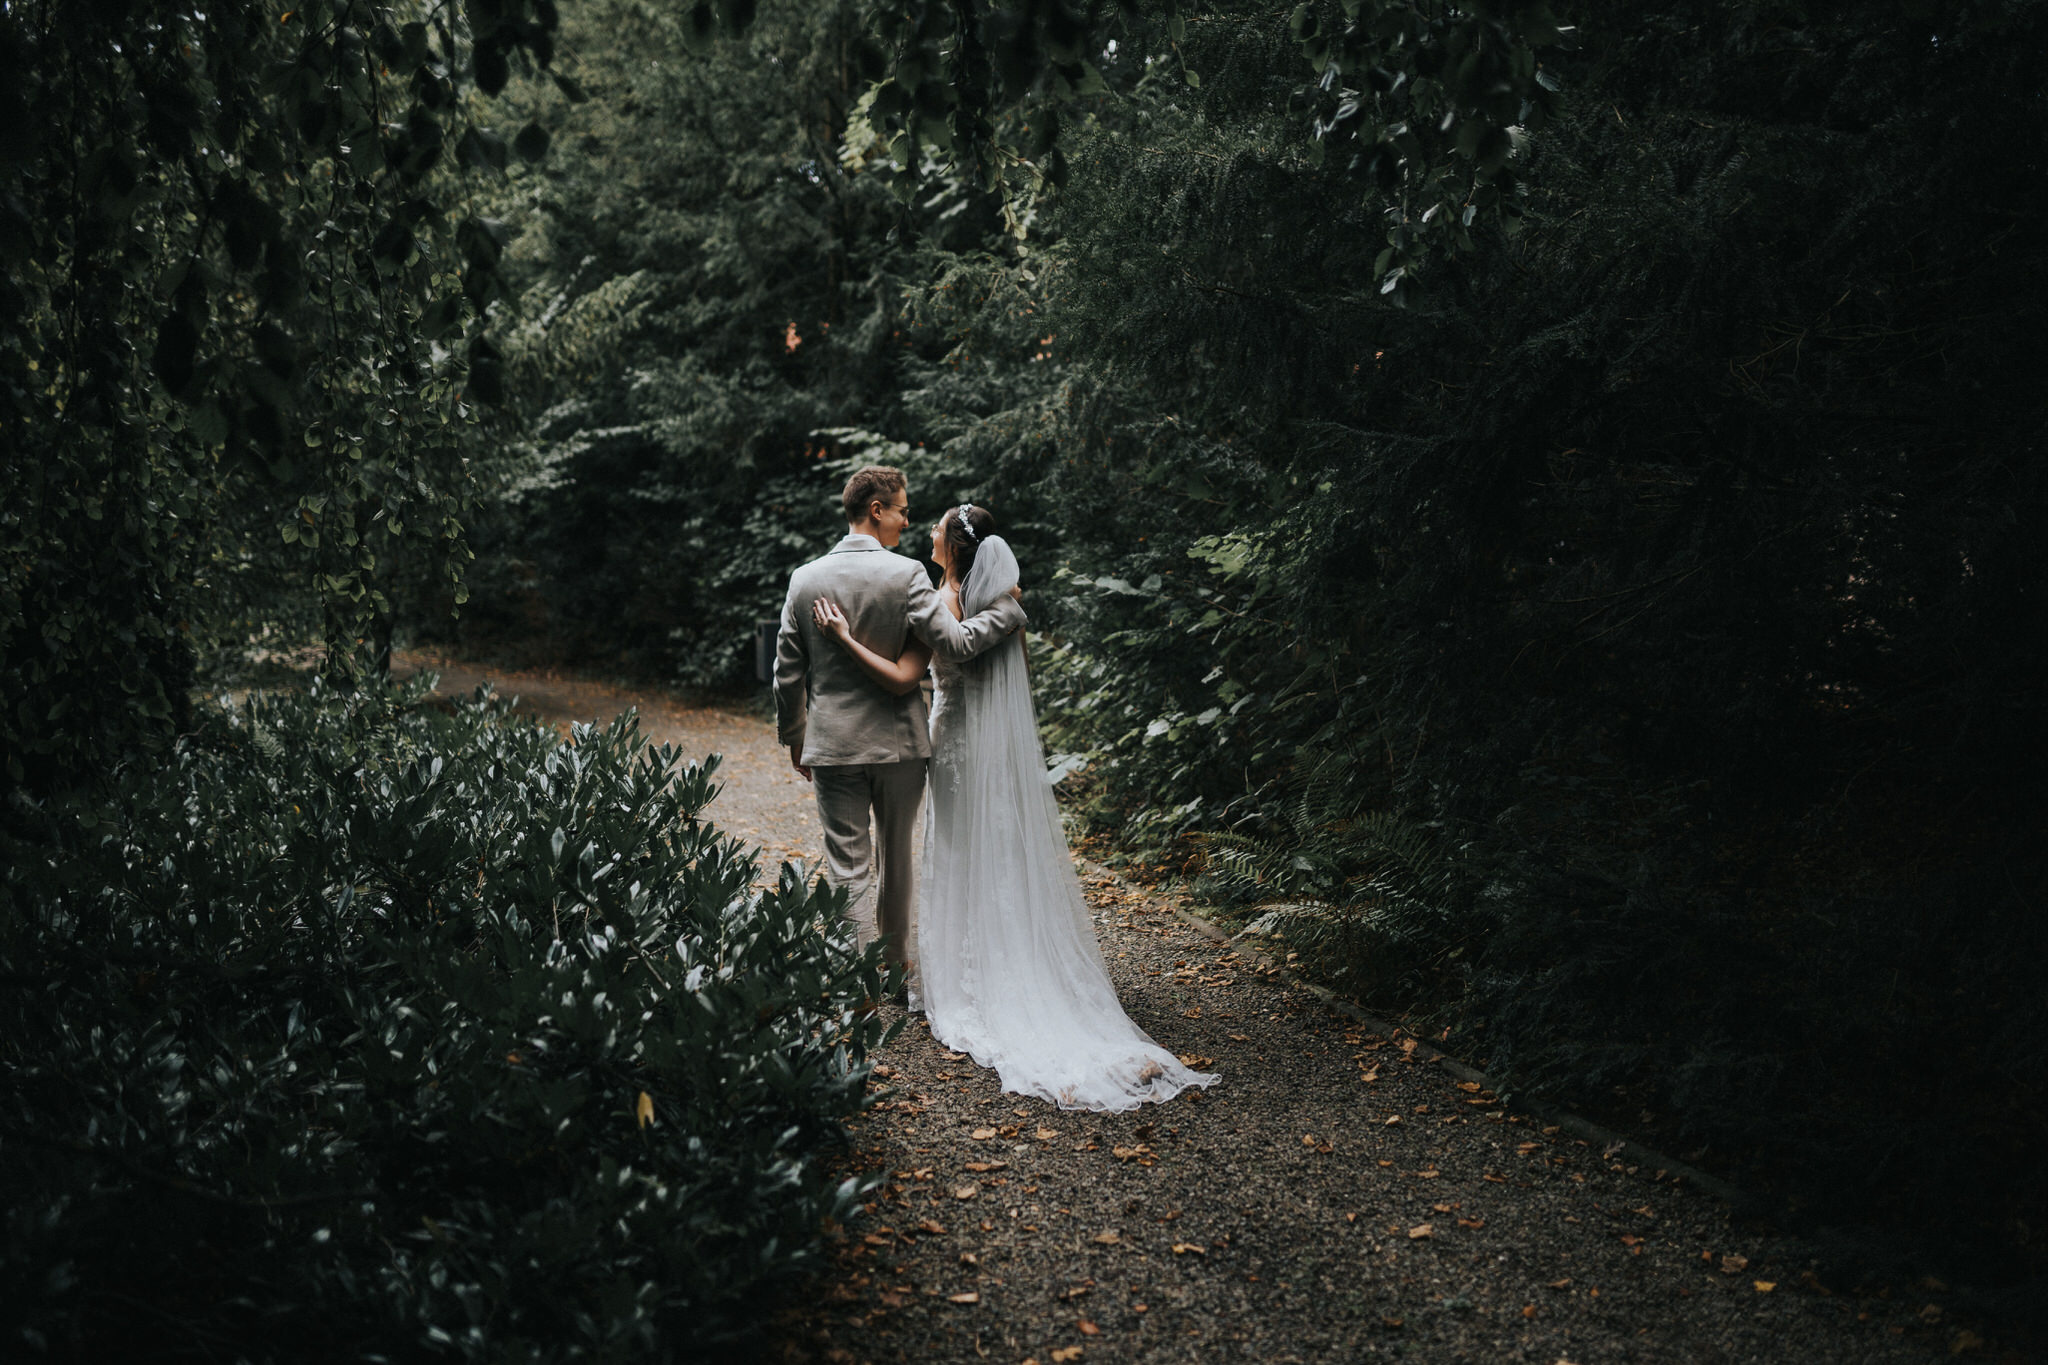 Verträumte Brautpaarfotos im Garten des Hotel Freigeist – Das frisch vermählte Paar genießt intime Momente der Zweisamkeit inmitten der grünen Oase, ein wundervolles Spiel aus Liebe und Natur.